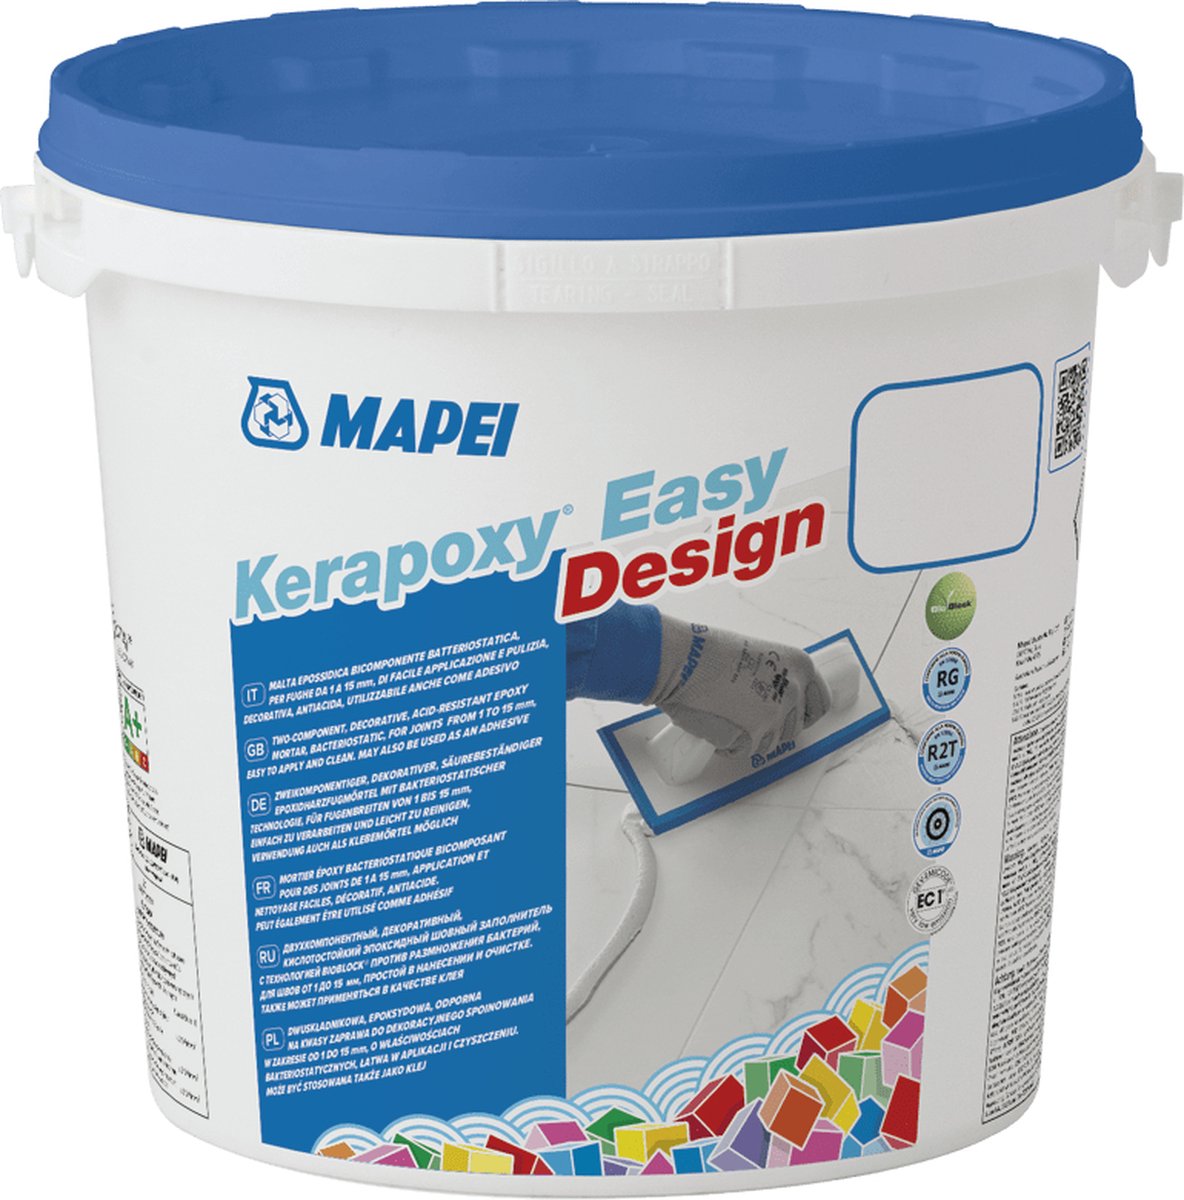 Mapei Kerapoxy Easy Design Voegmortel - Voor Keramische Tegels & Natuursteen - Kleur 114 Antraciet - 3 kg - Mapei